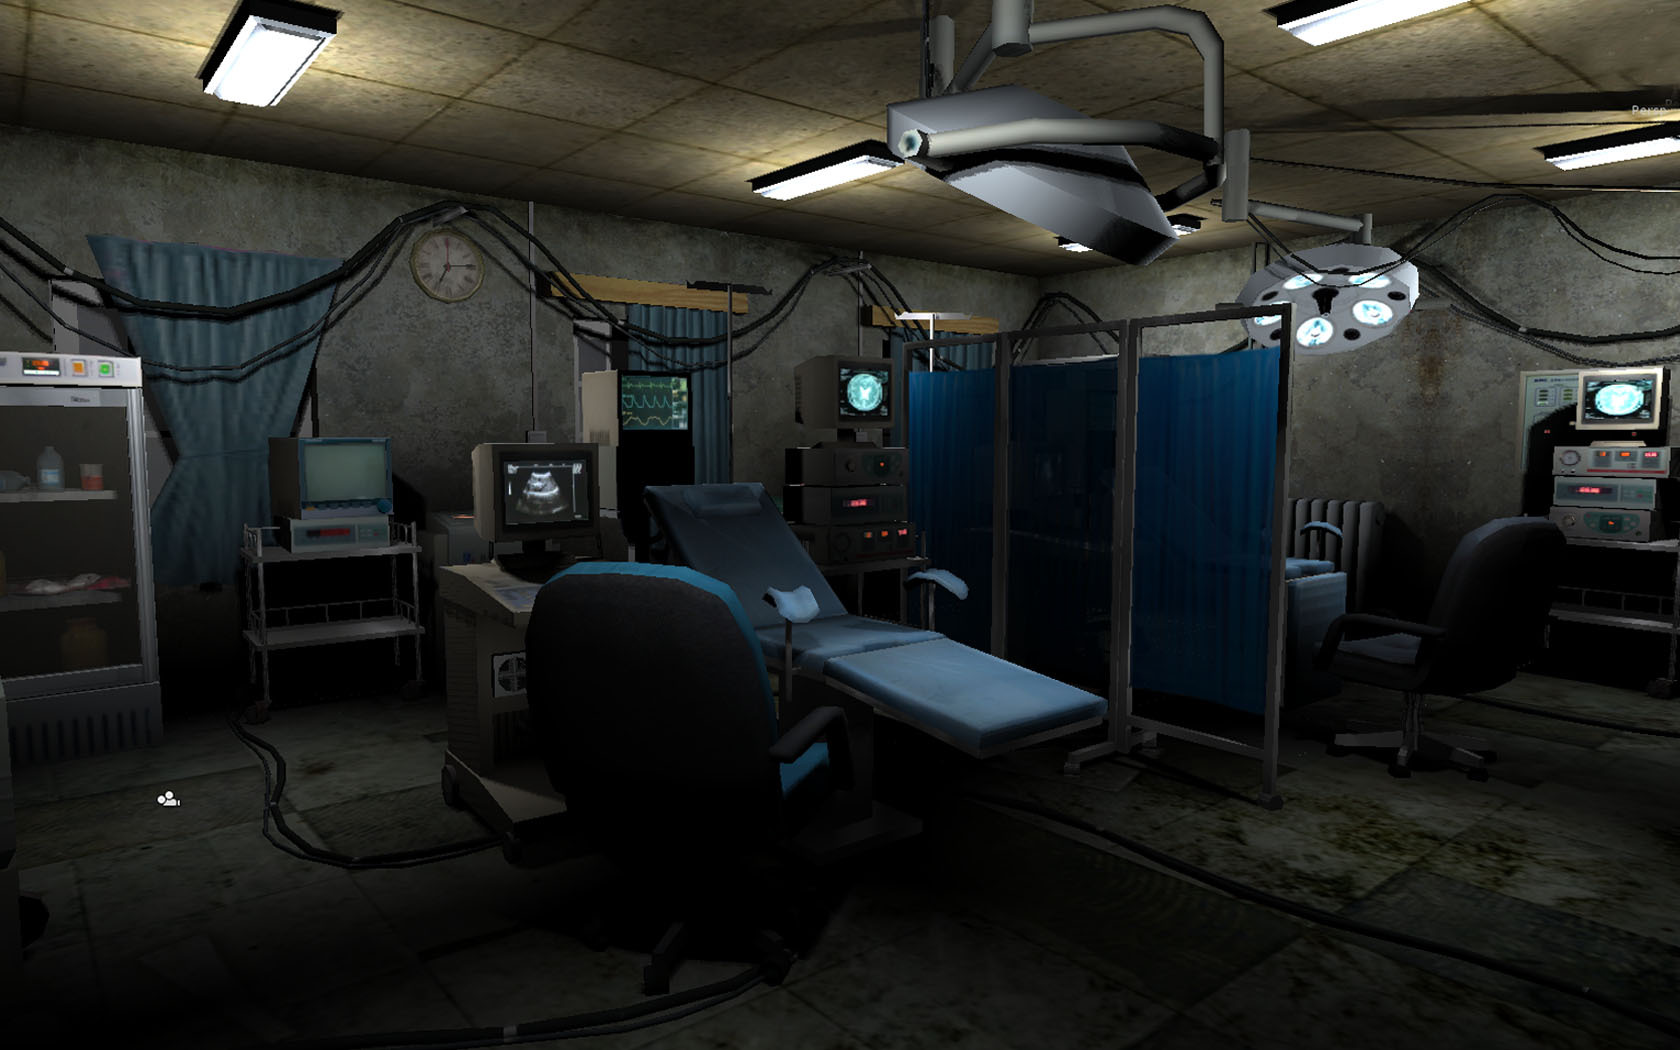 恐怖医院-病房模型 - 游戏/影视/动画 - 作品模型 - CG模型网